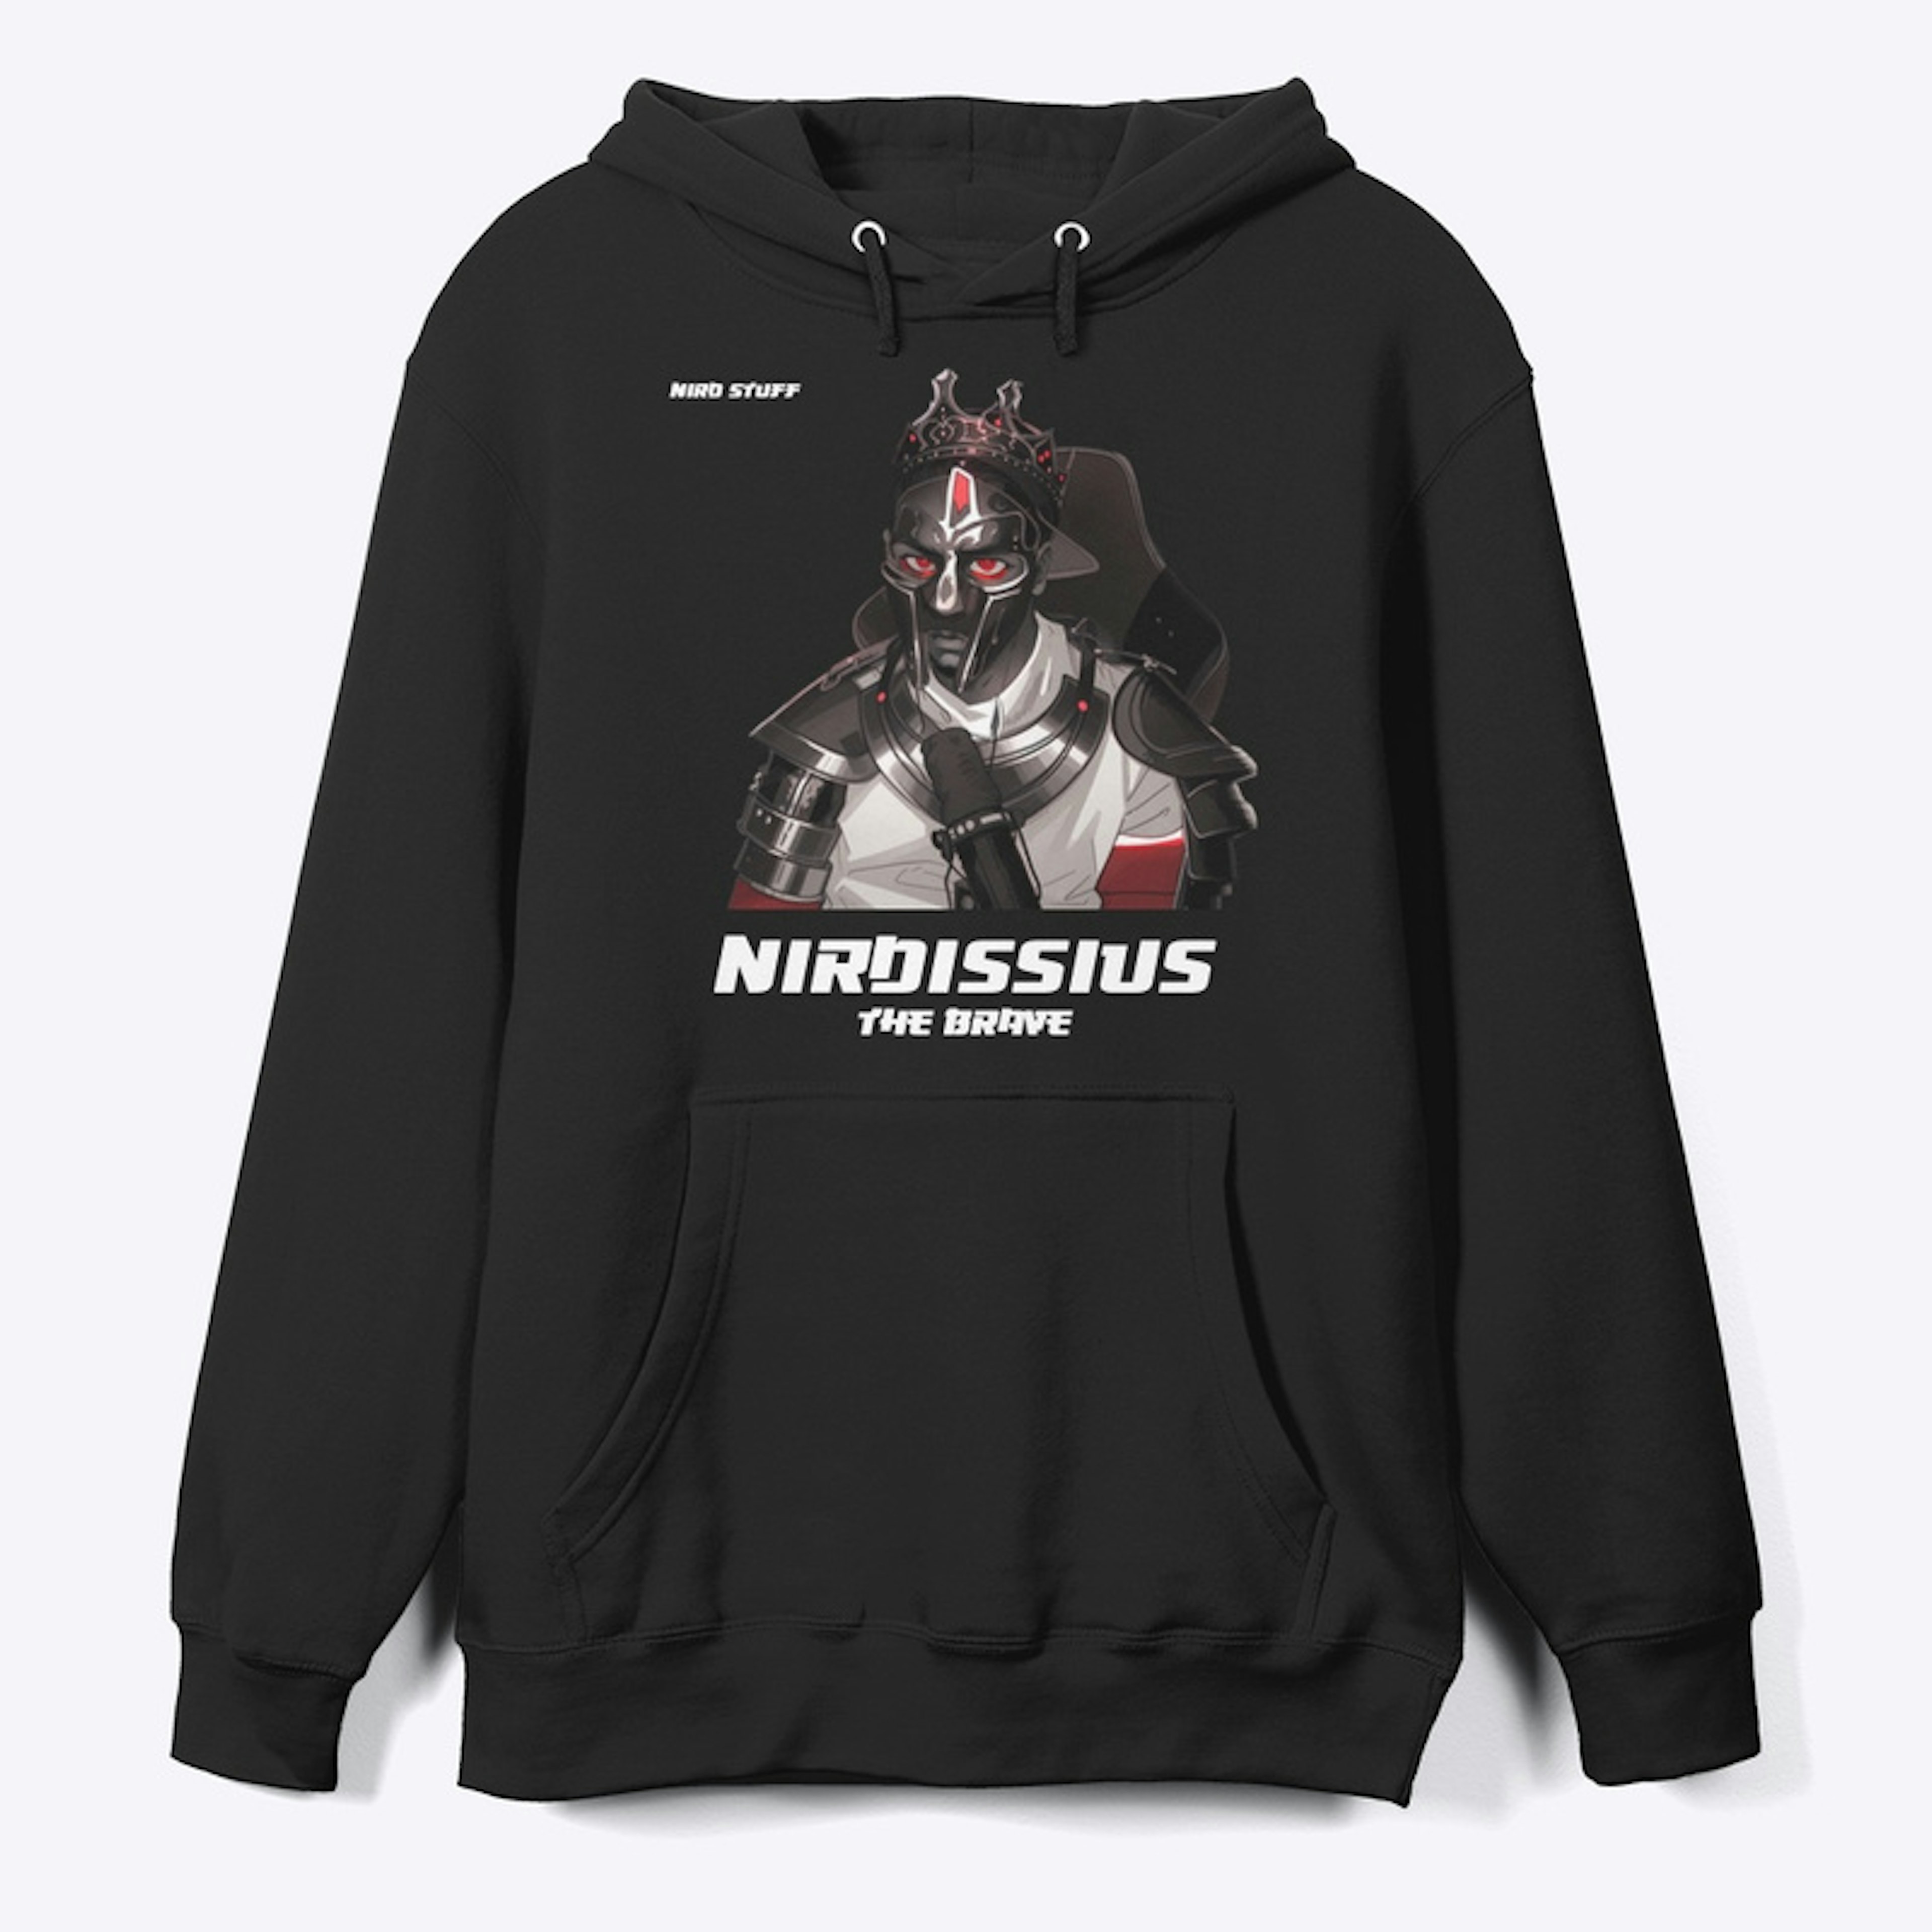 Nirdissius The Brave